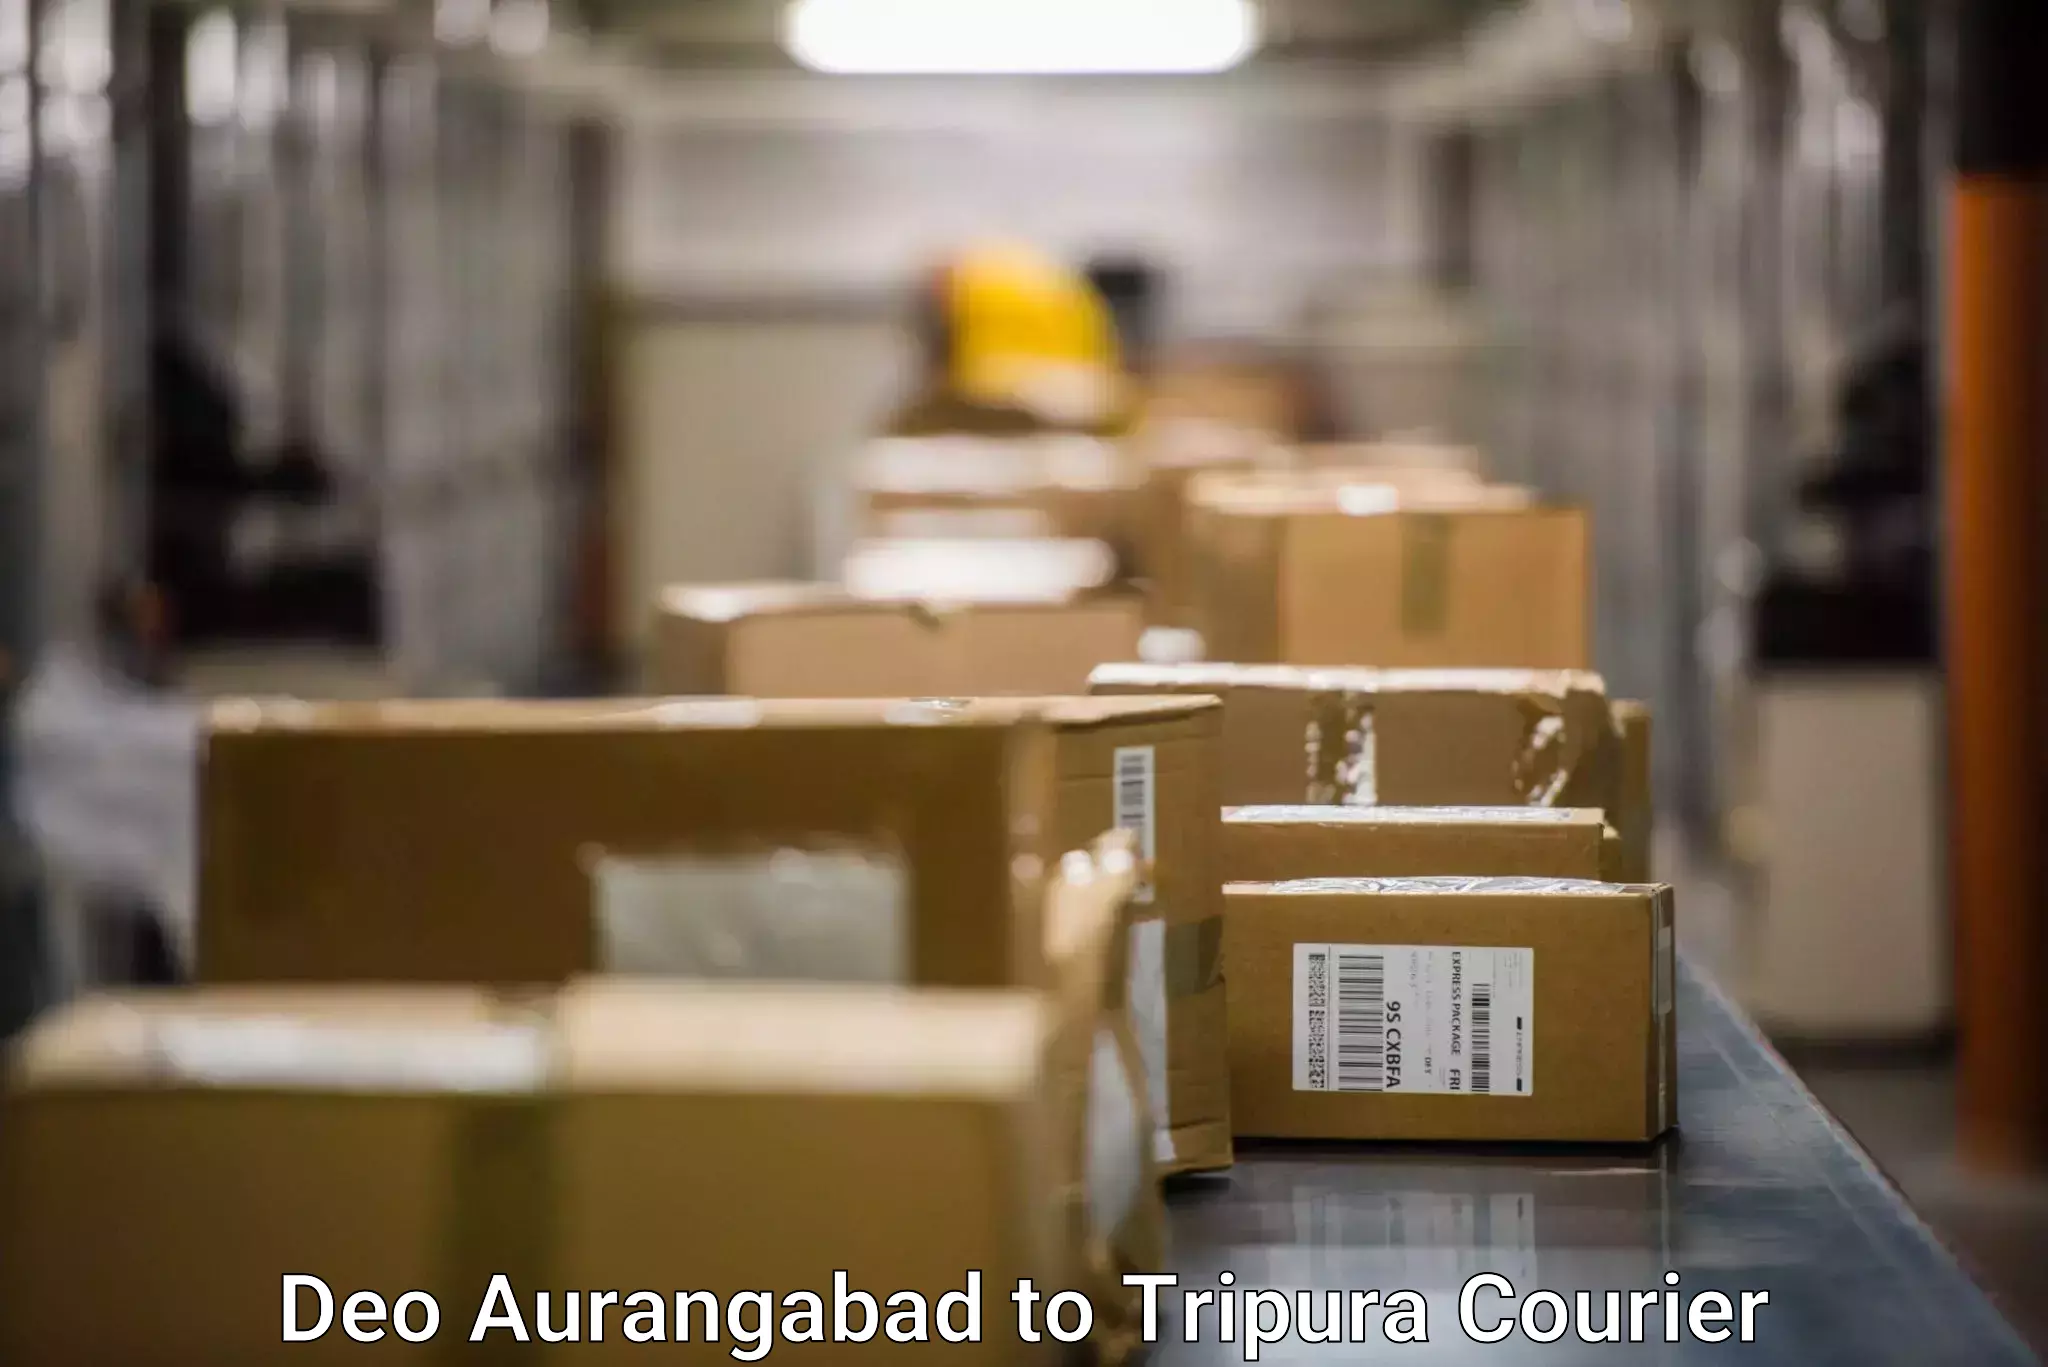 Smart parcel delivery Deo Aurangabad to Udaipur Tripura